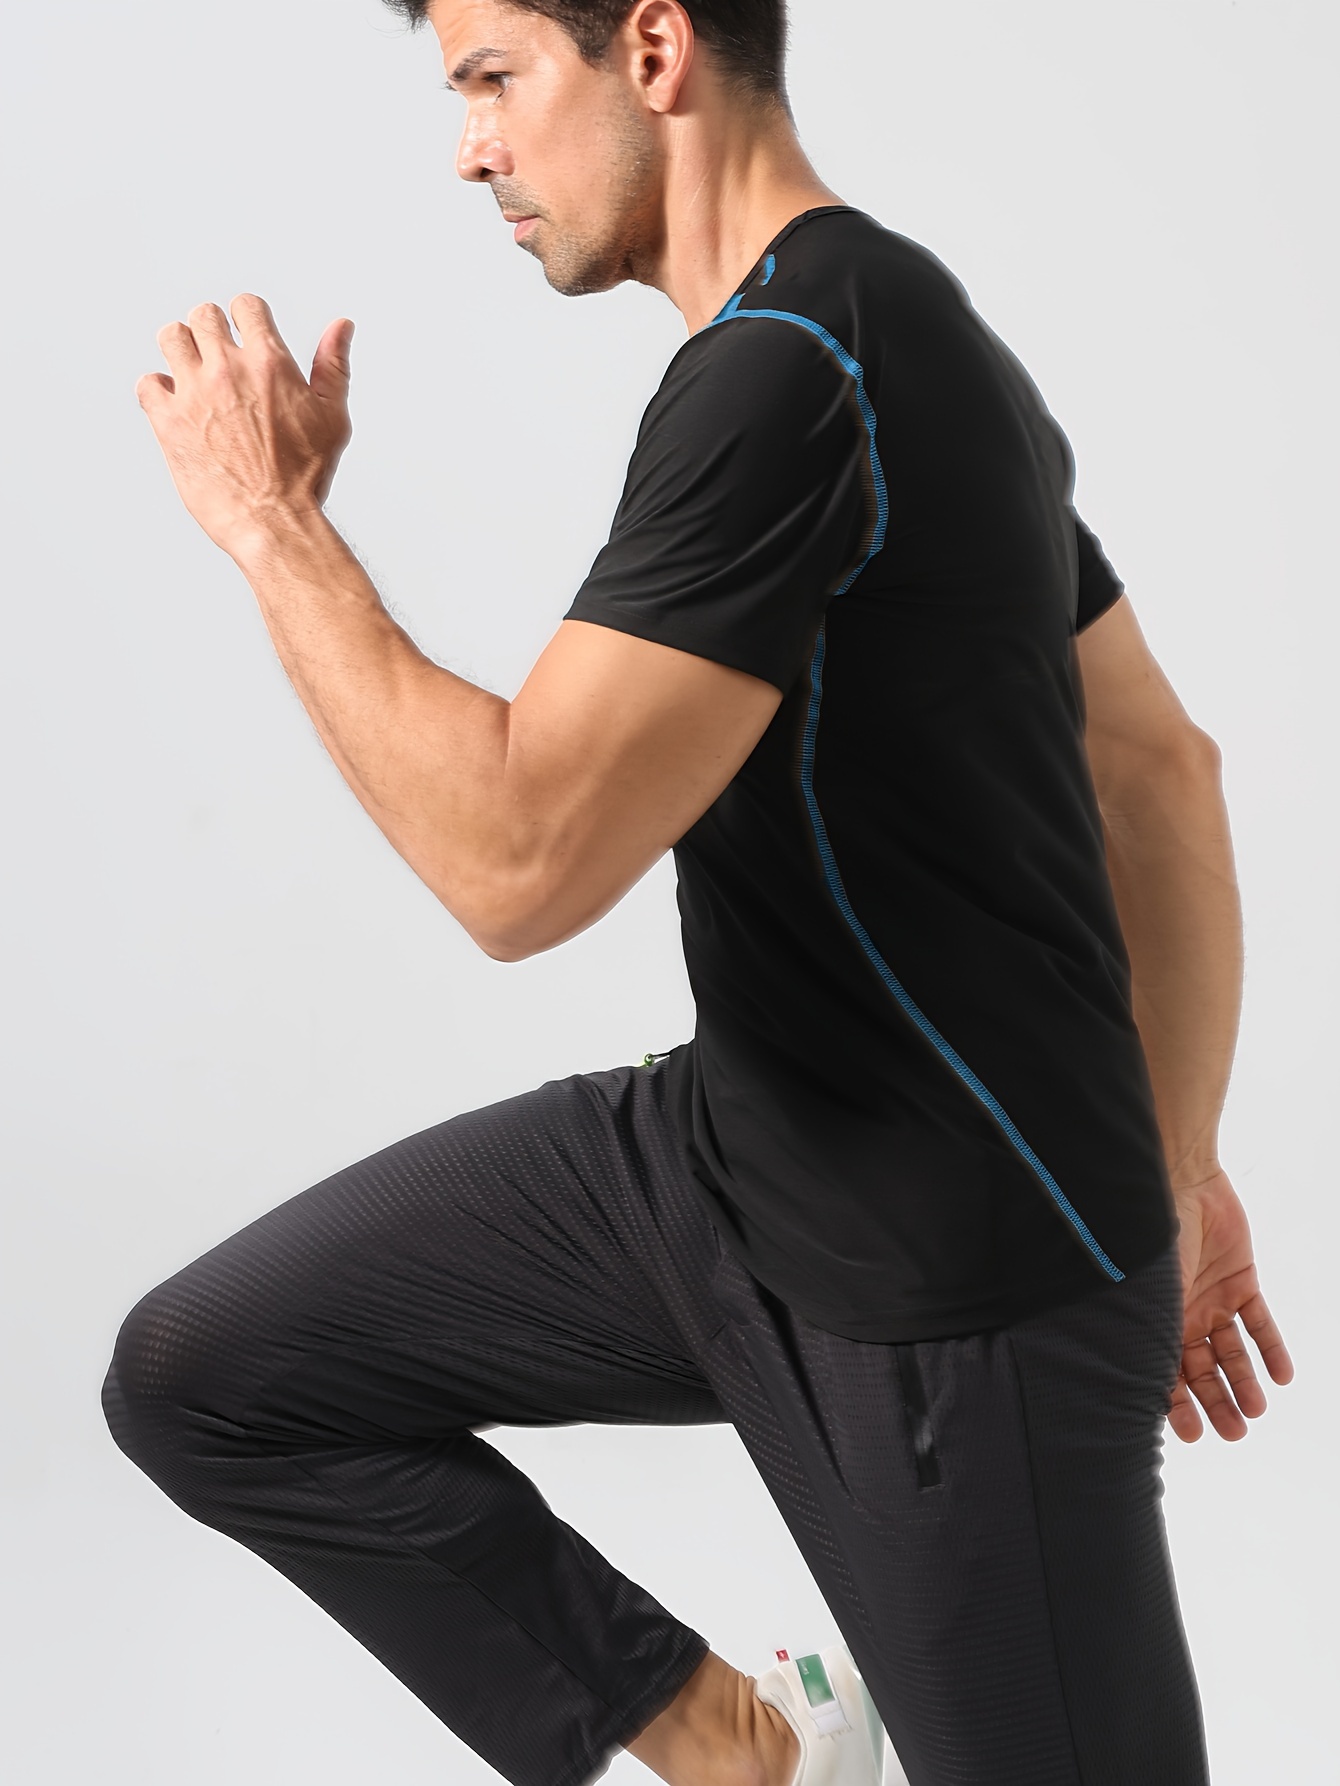 Men's Compression Sweat Sauna T shirt High Stretch Body - Temu Canada